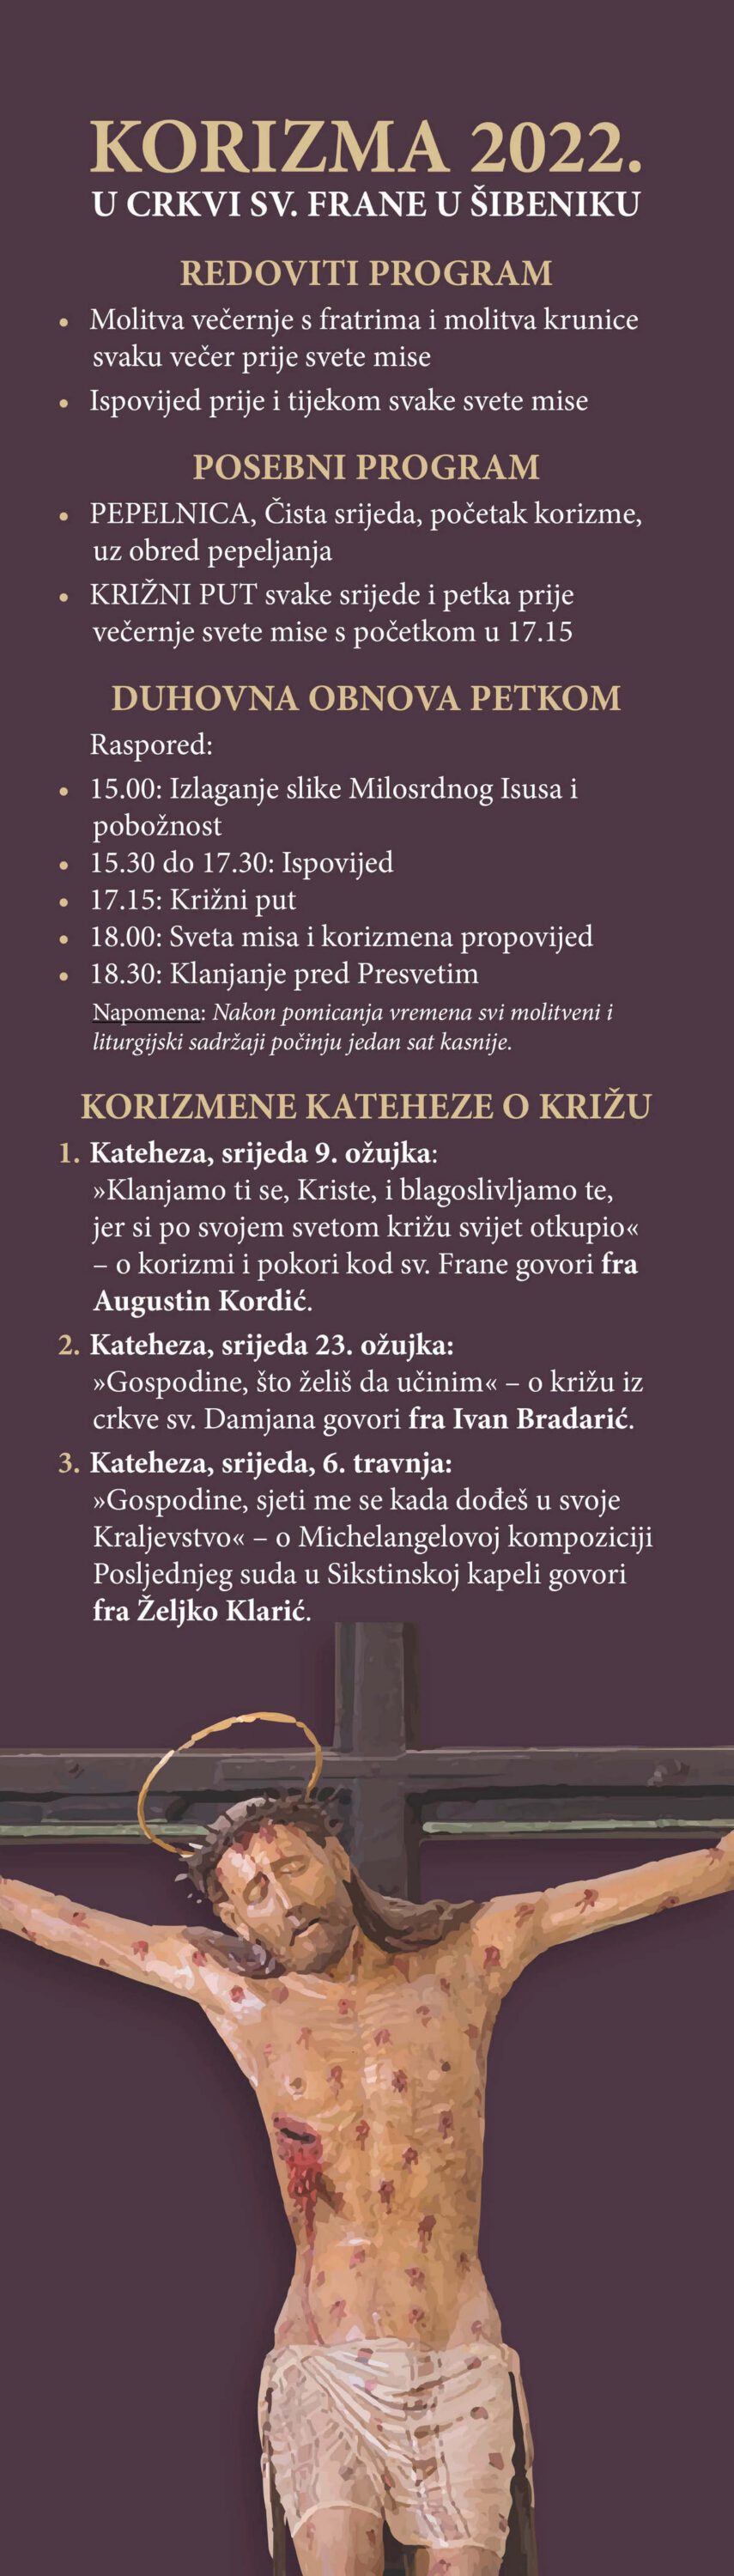 Korizma 2022. - raspored